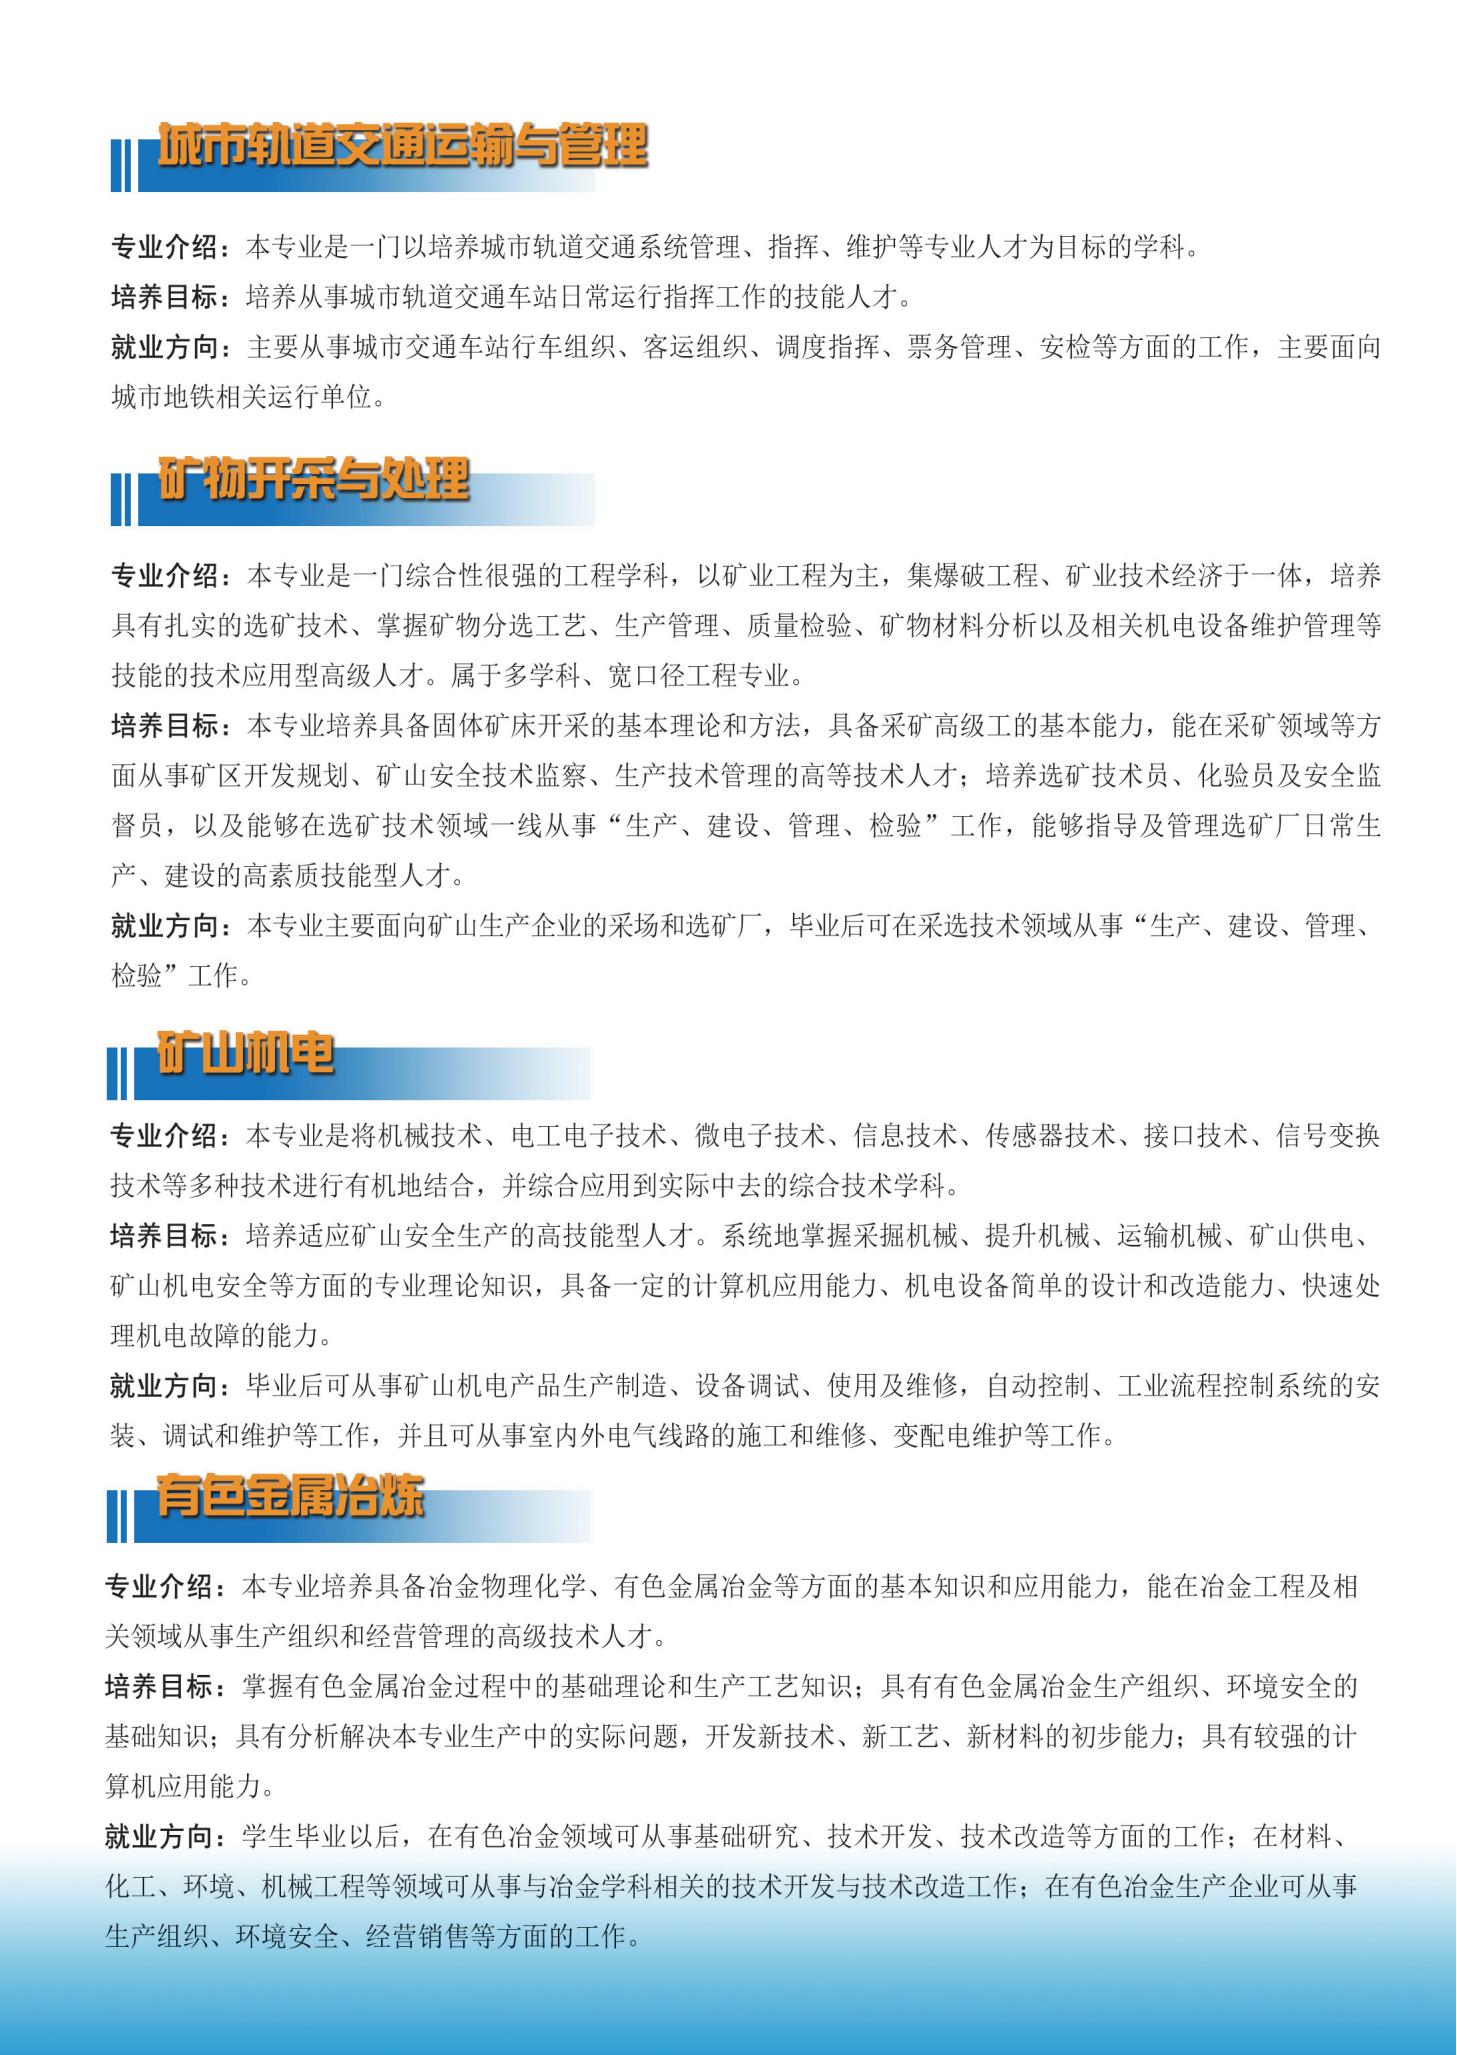 云南铜业高级技工学校招生宣传折页_04.jpg